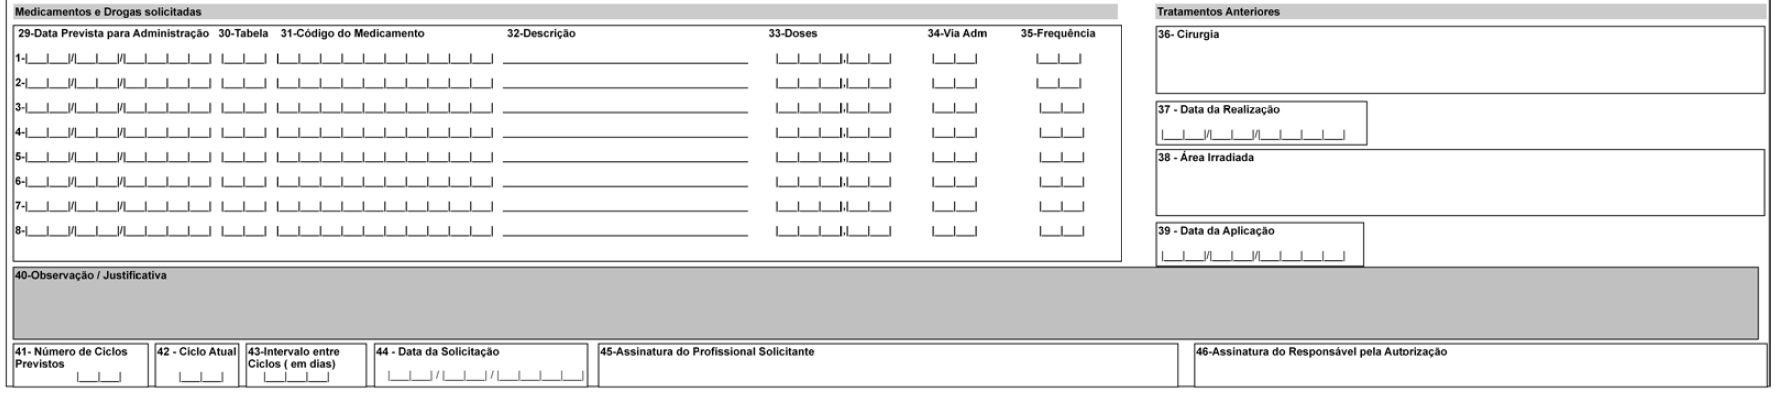 Tabela (tabela de domínio 87) 16 Procedimentos Médicos 18 Diárias, taxas e gases medicinais 19 Materiais e Órteses, Próteses e Materiais Especiais (OPME) 20 Medicamentos Anexo de